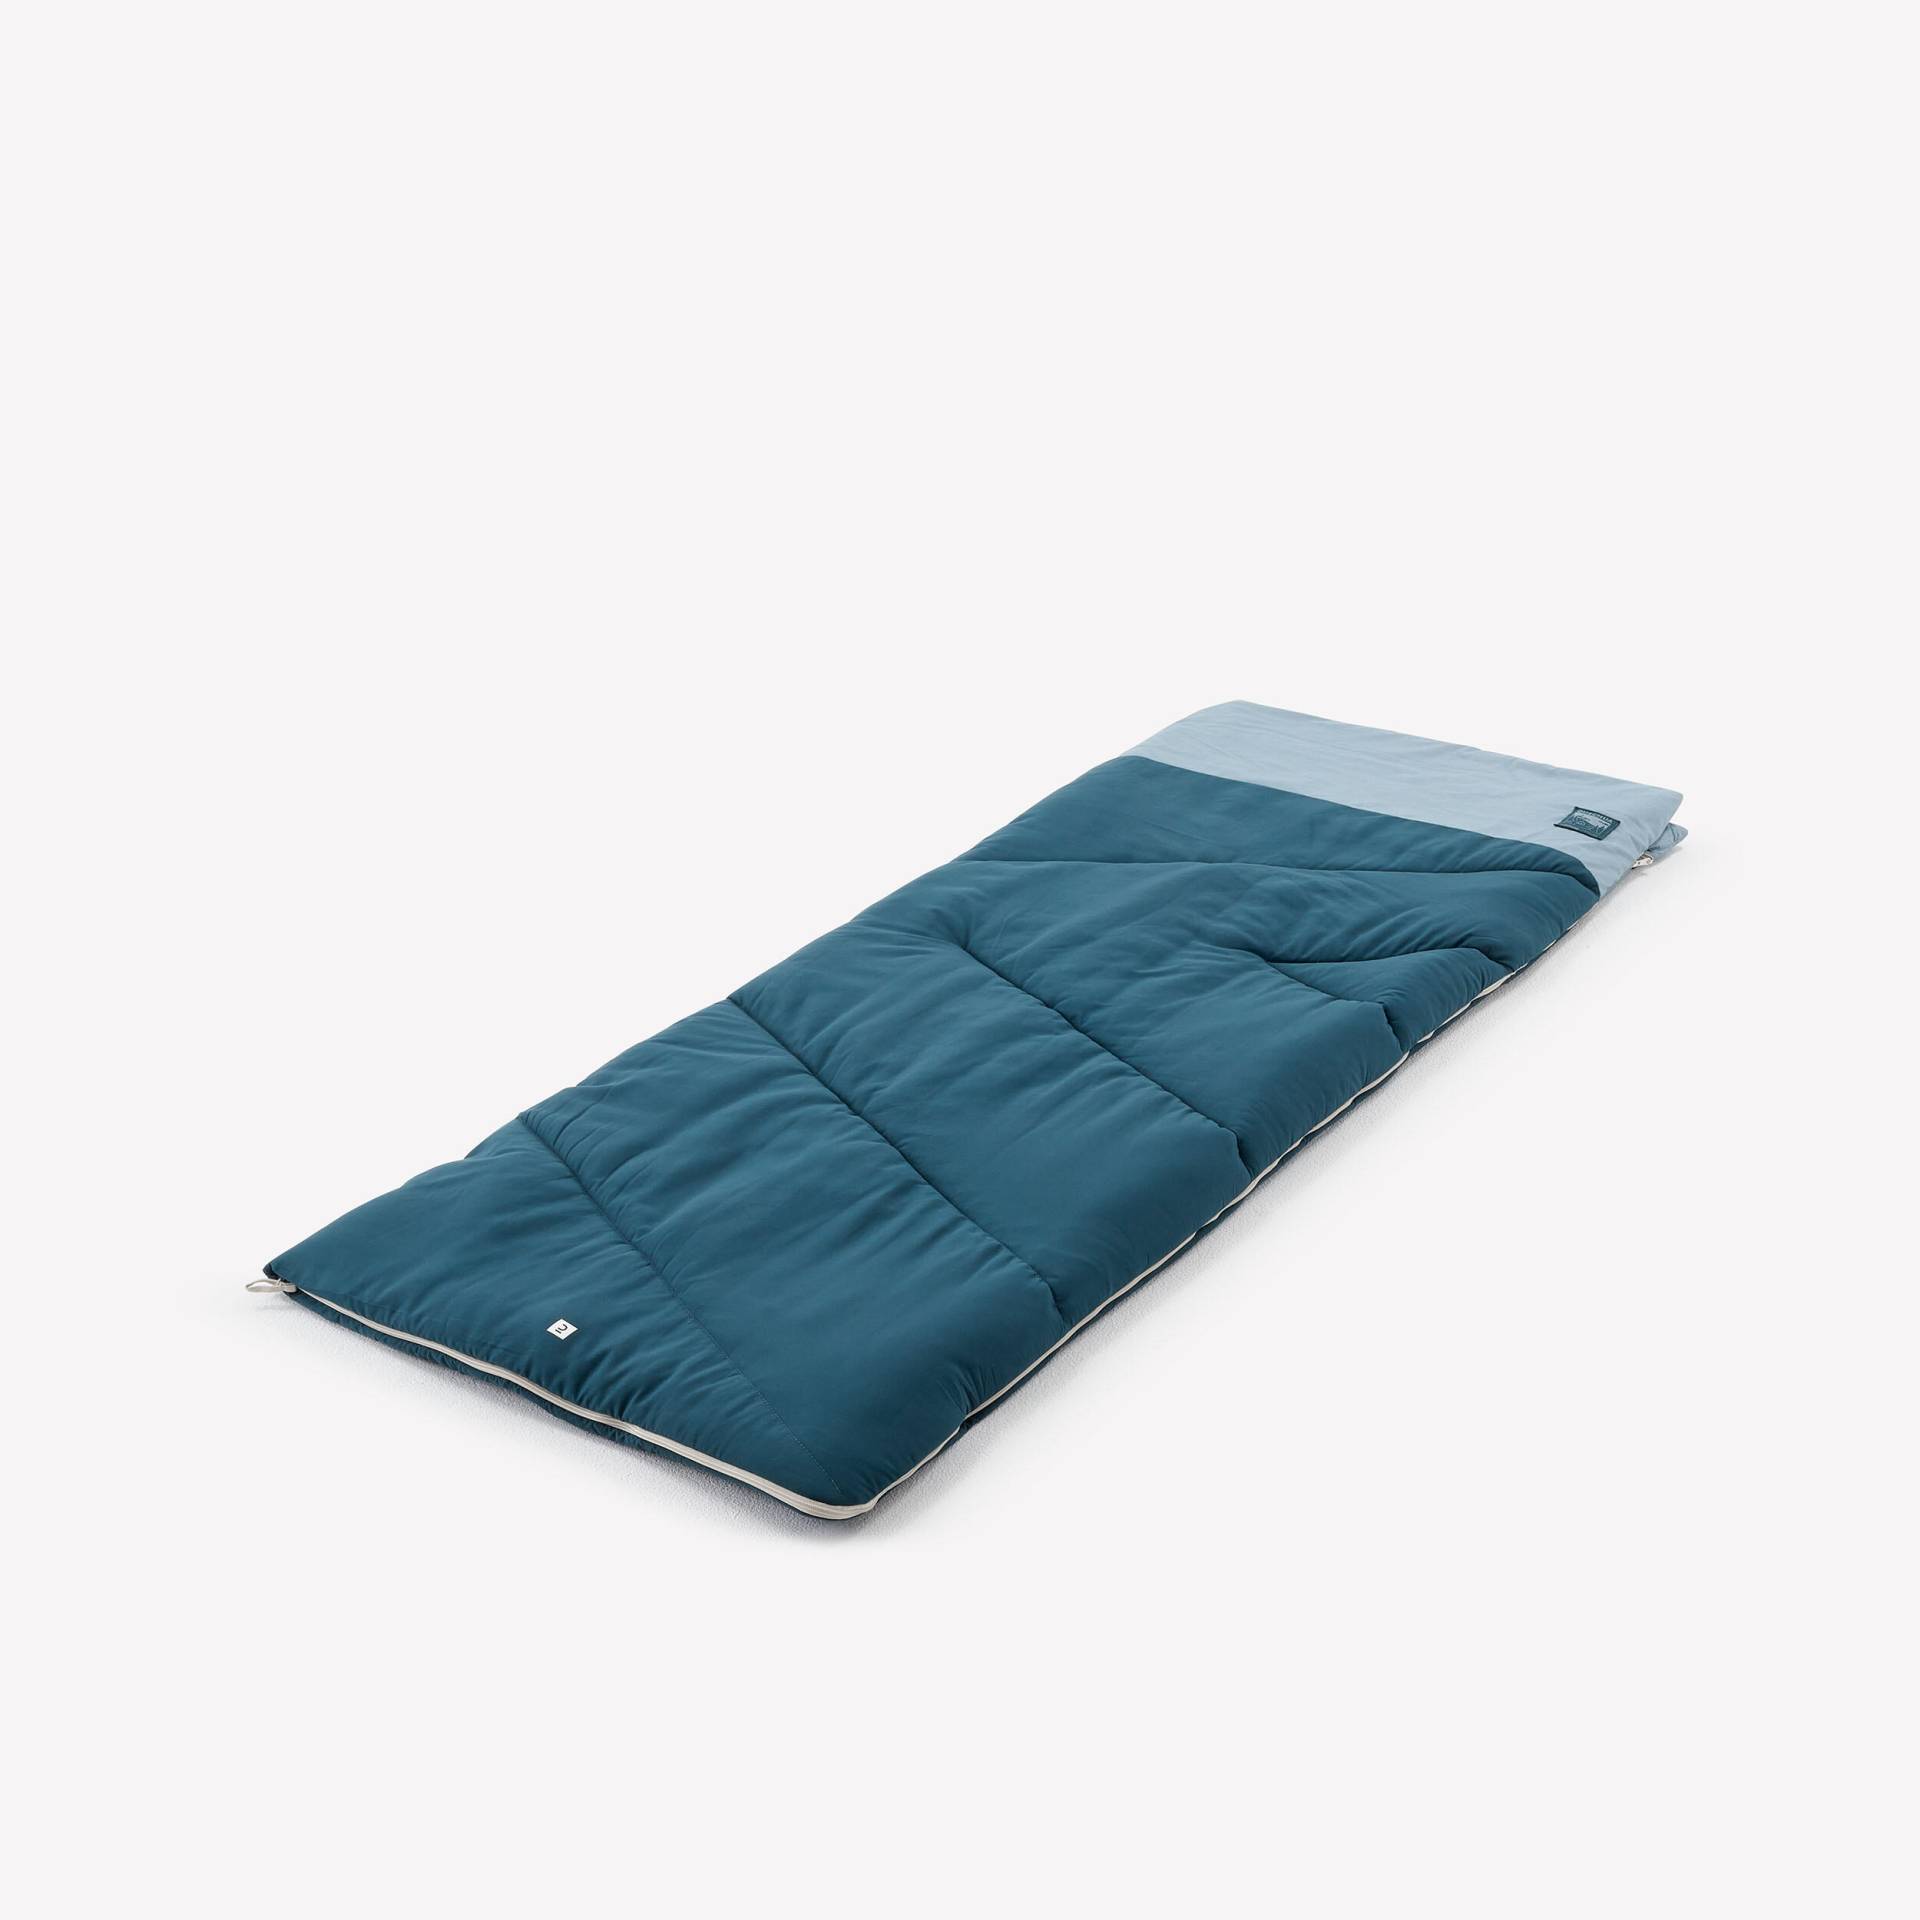 Camping-Schlafsack aus Baumwolle - Ultim Comfort 10° blau von QUECHUA